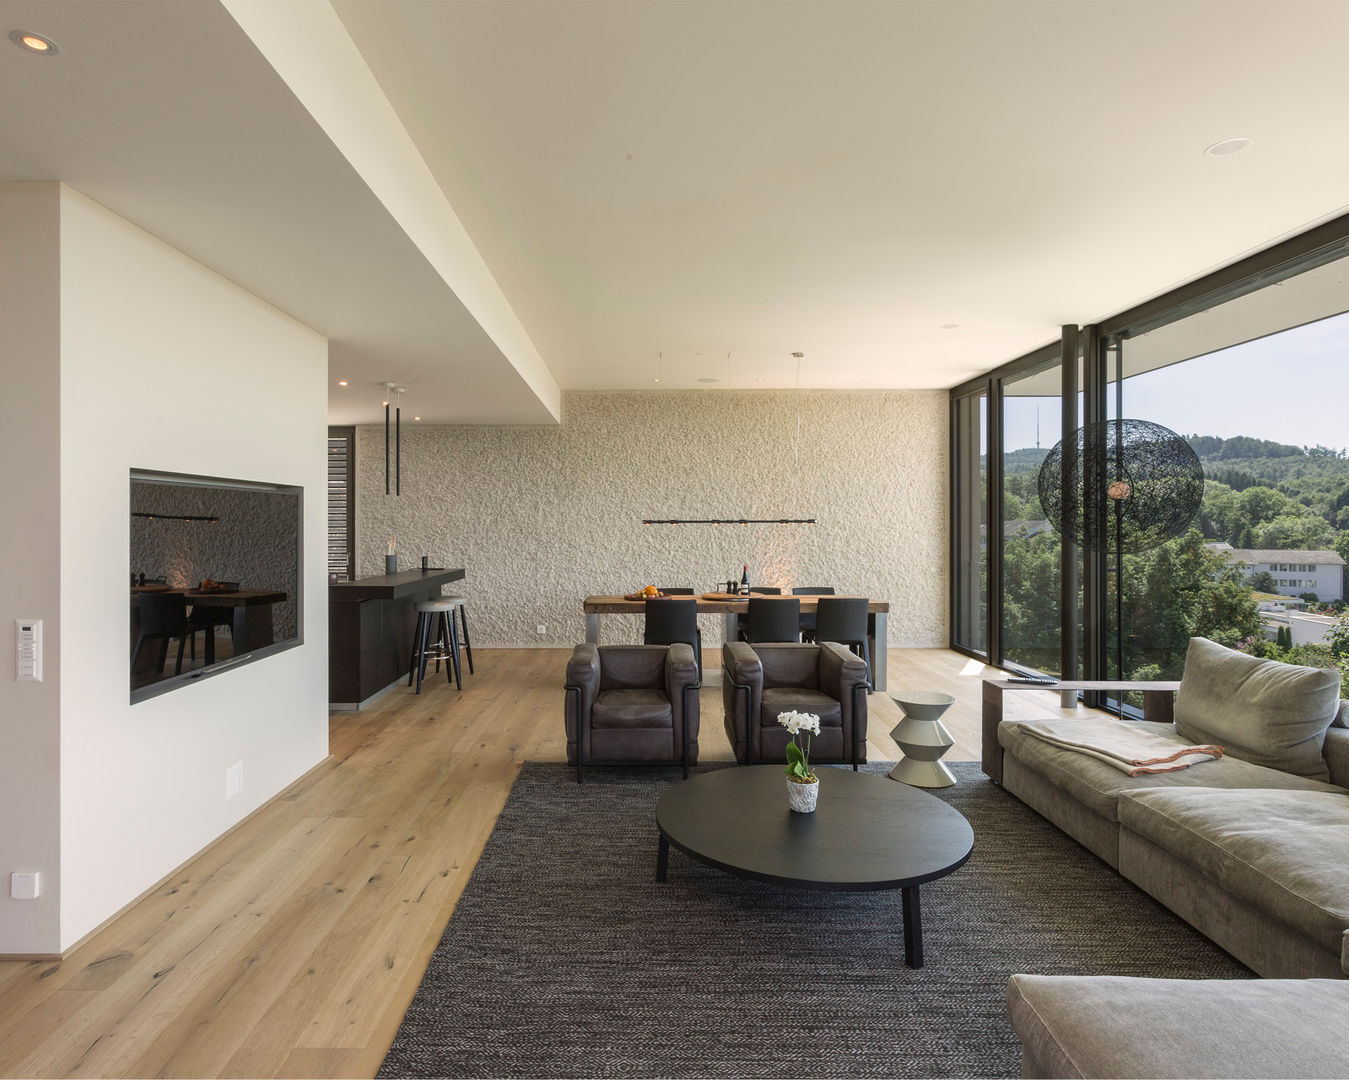 Objekt 340, meier architekten zürich meier architekten zürich Modern living room Wood Wood effect